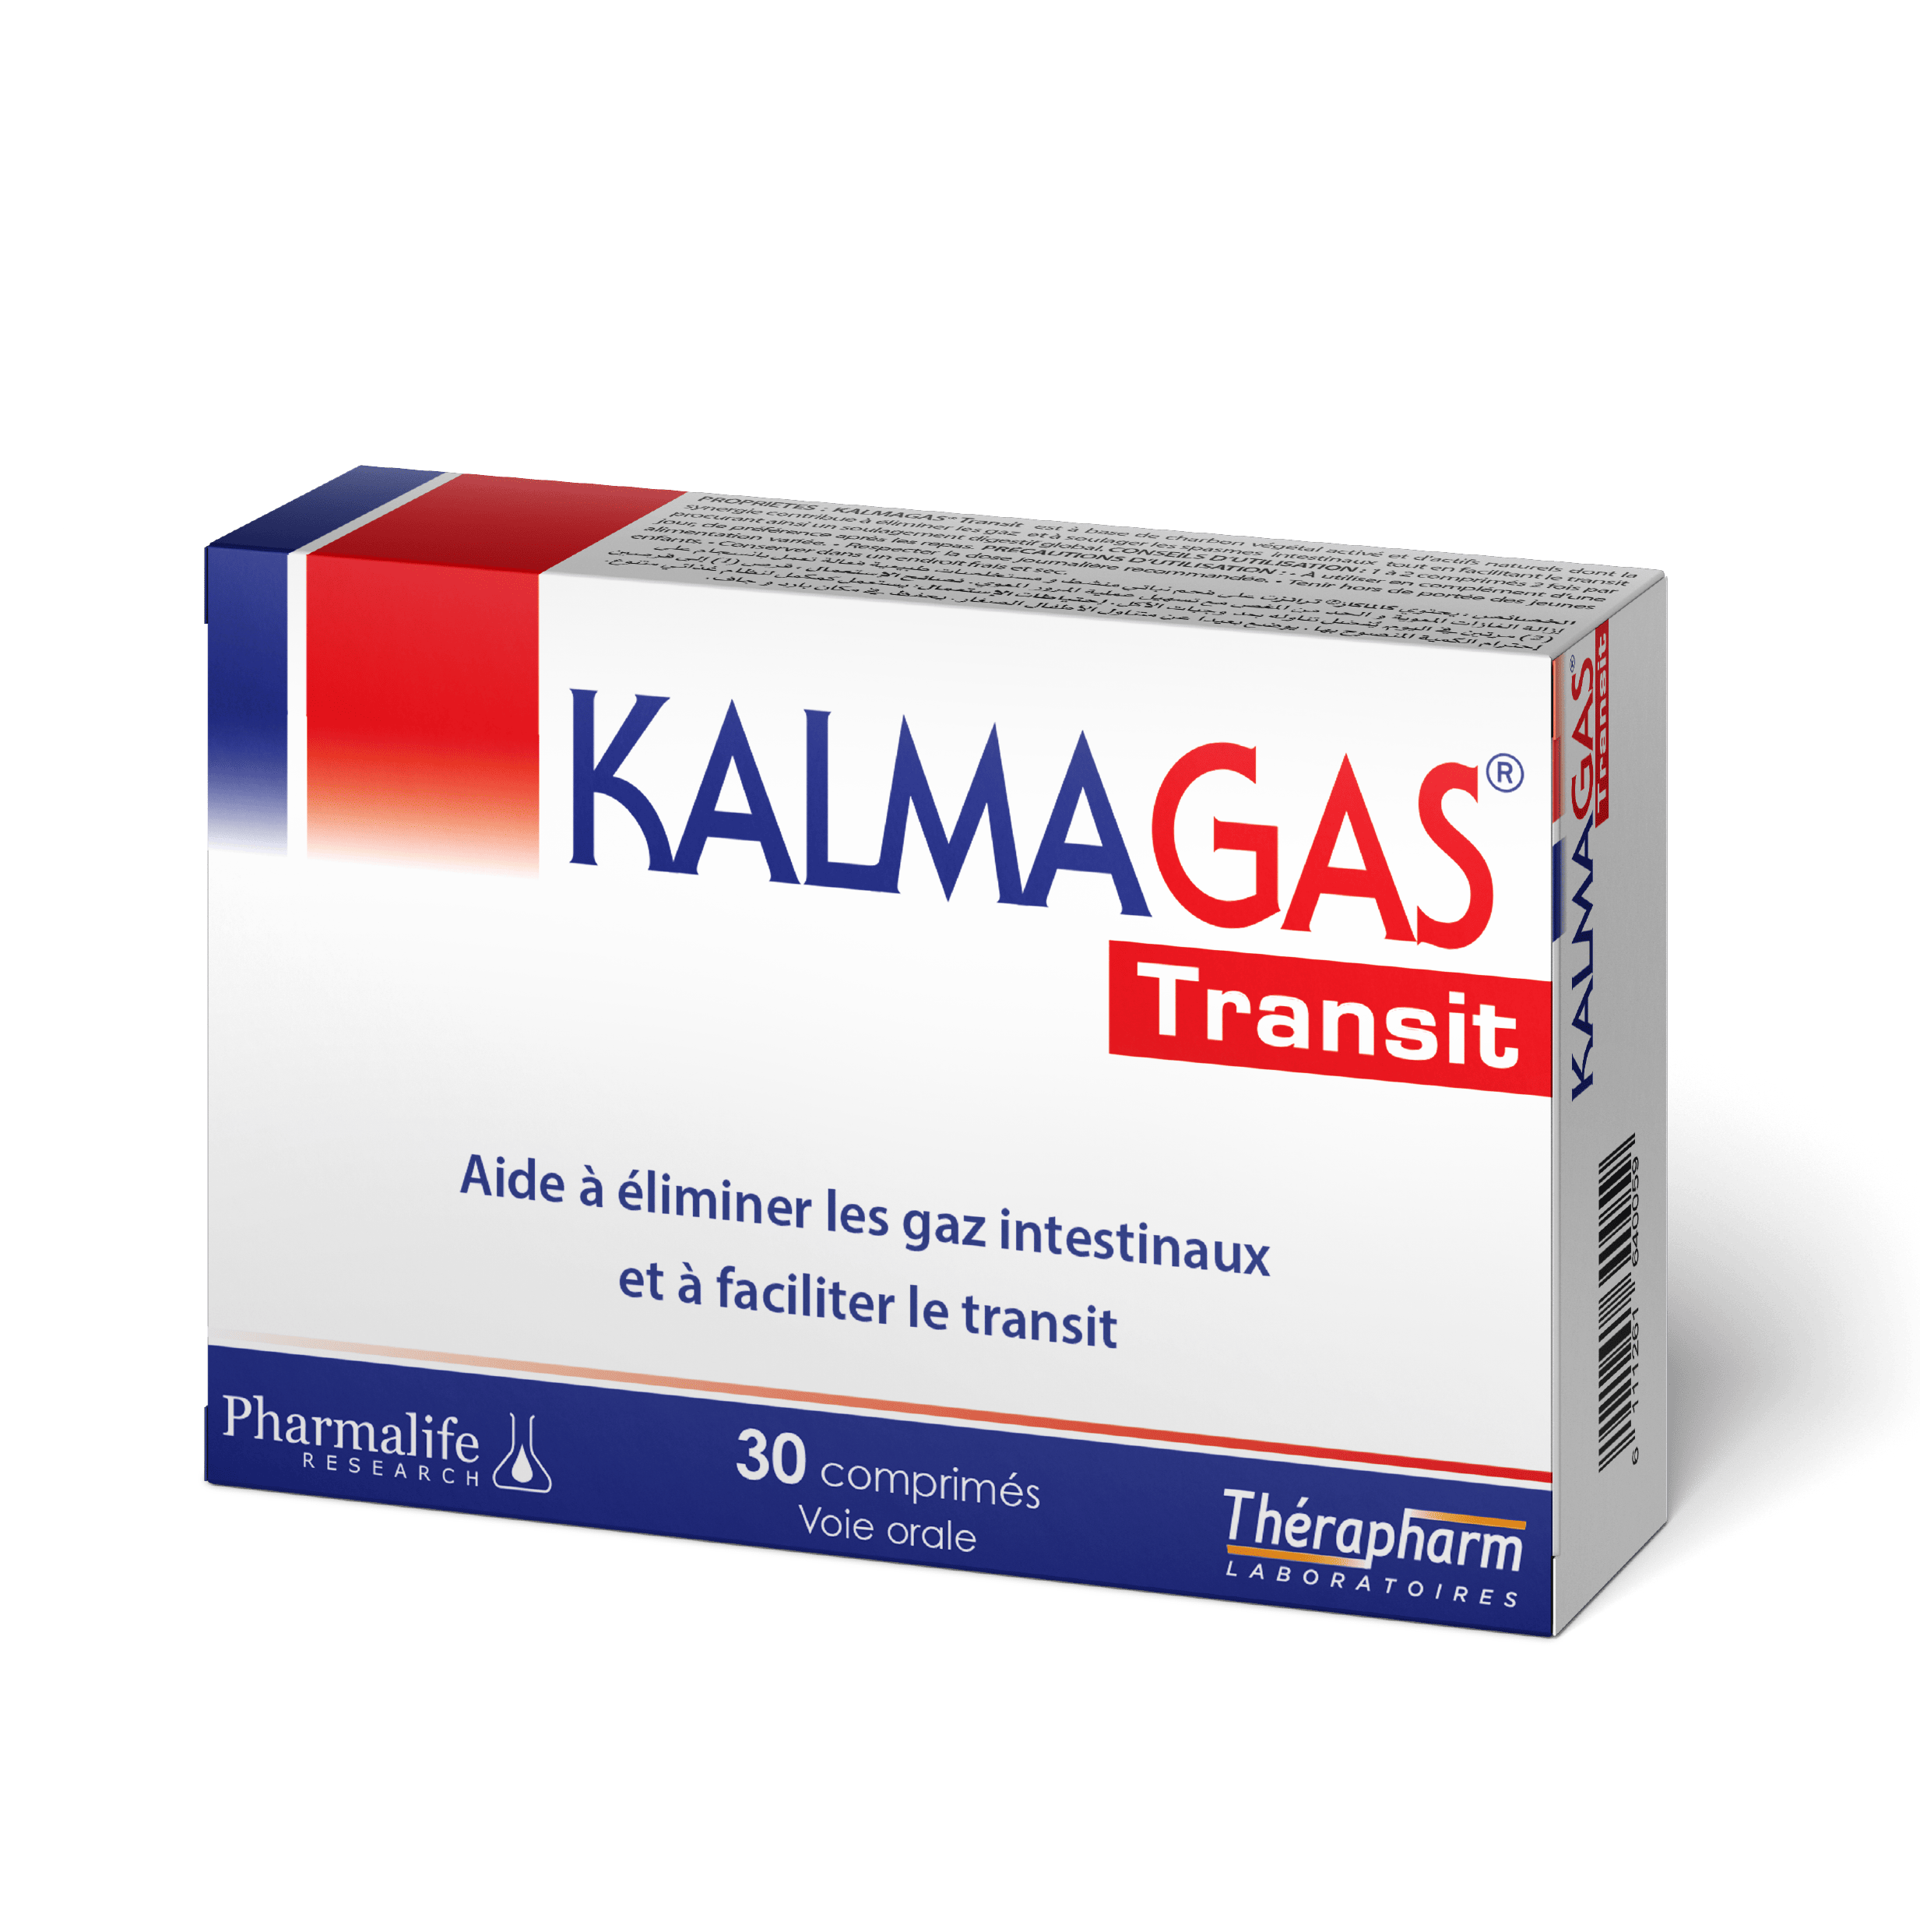 KALMAGAS ® Transit